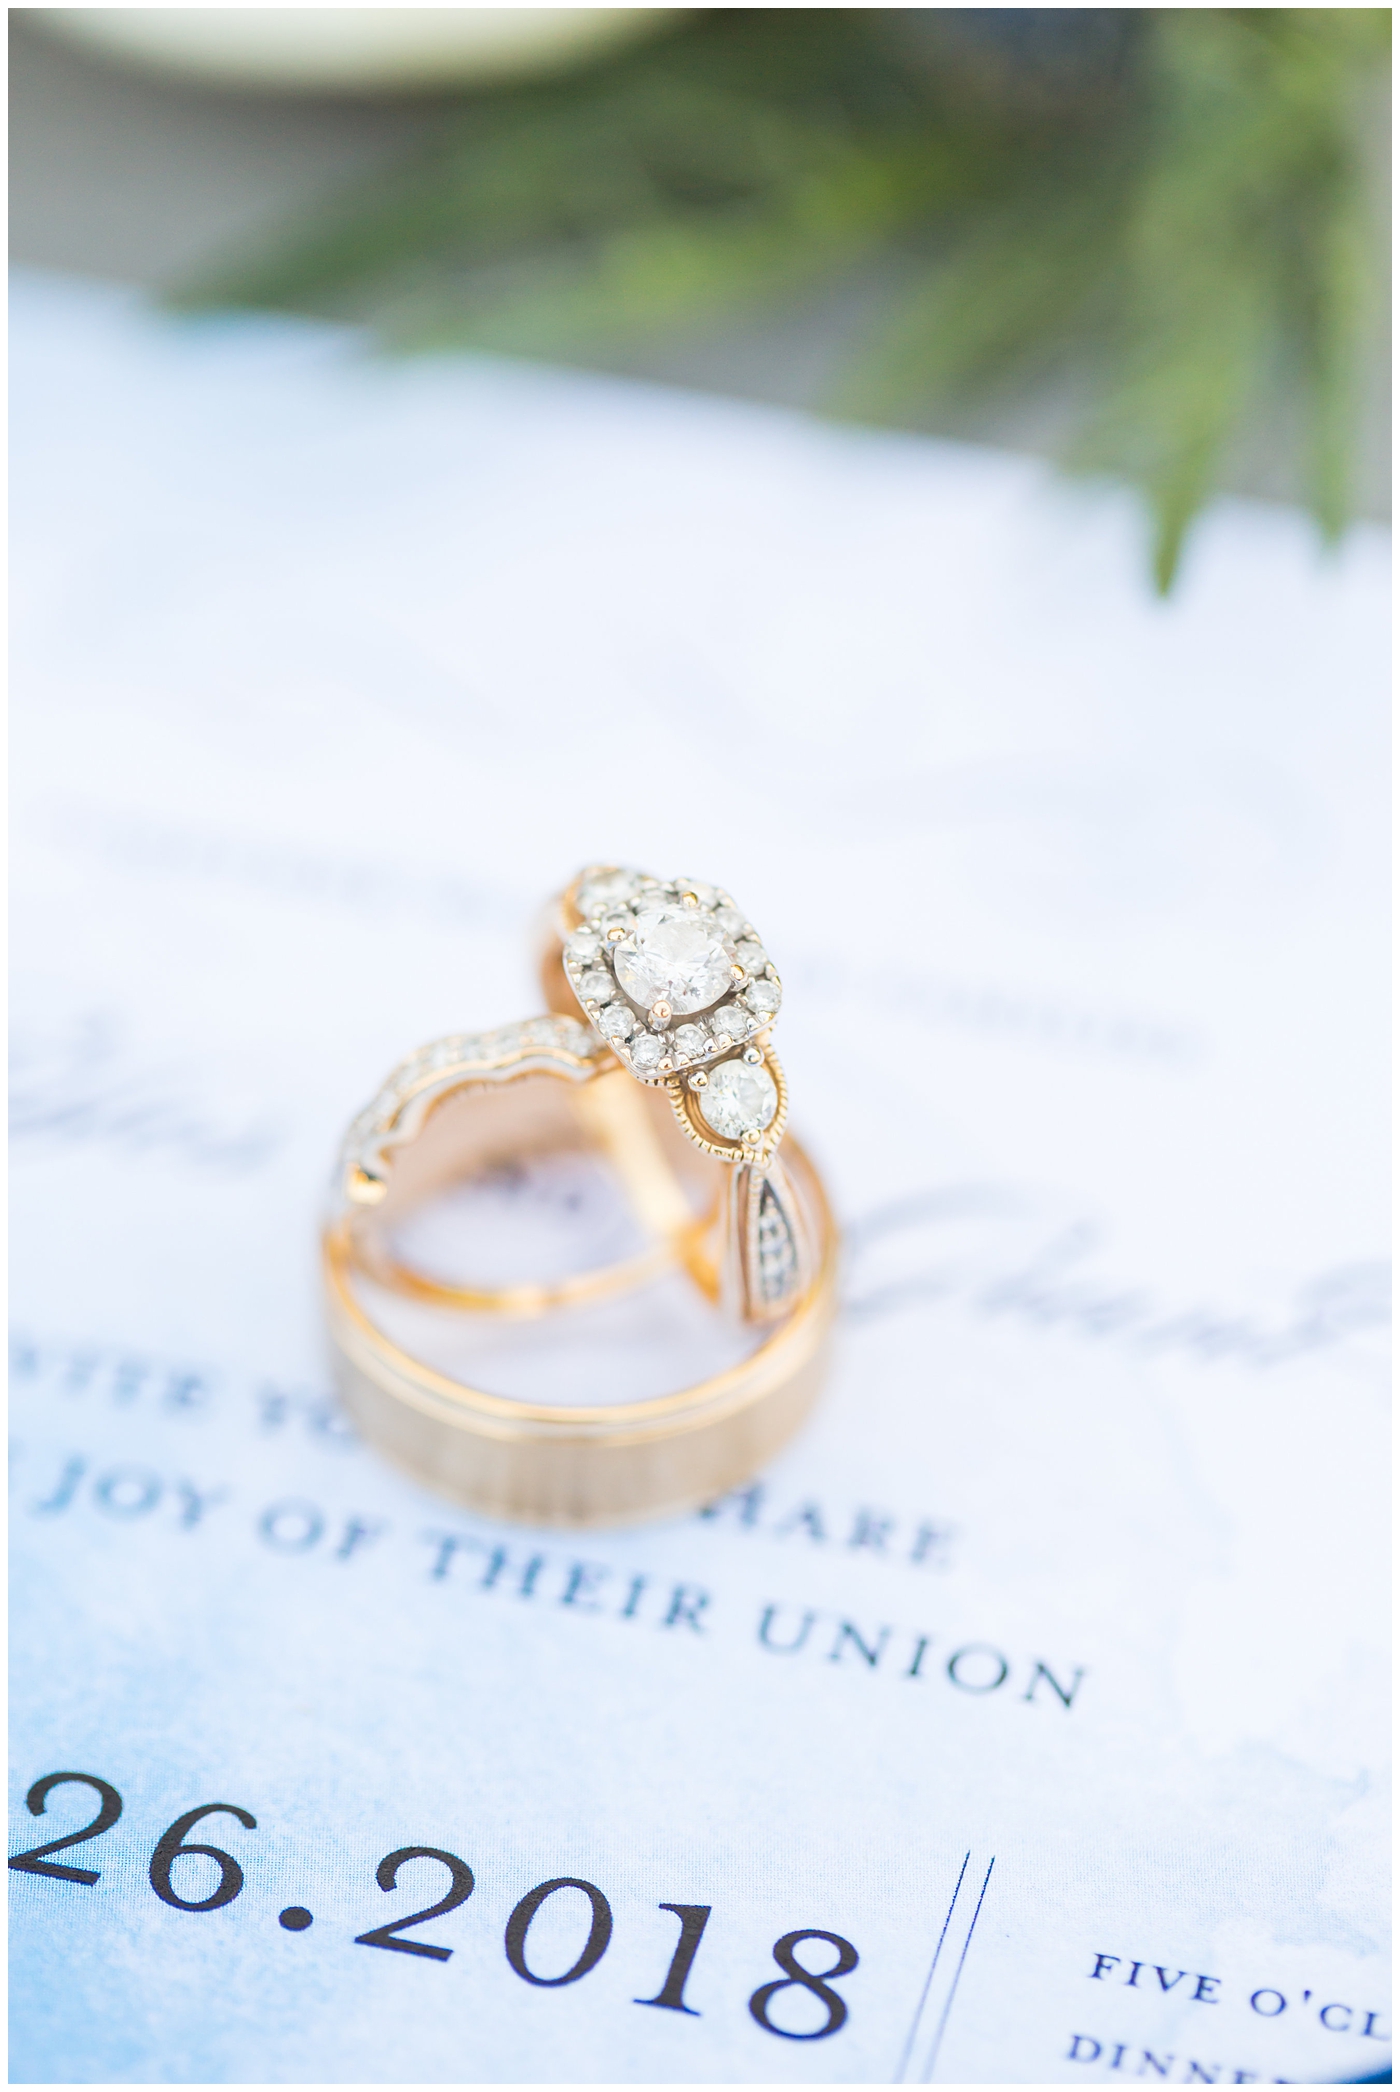 gold wedding band rings detail shot